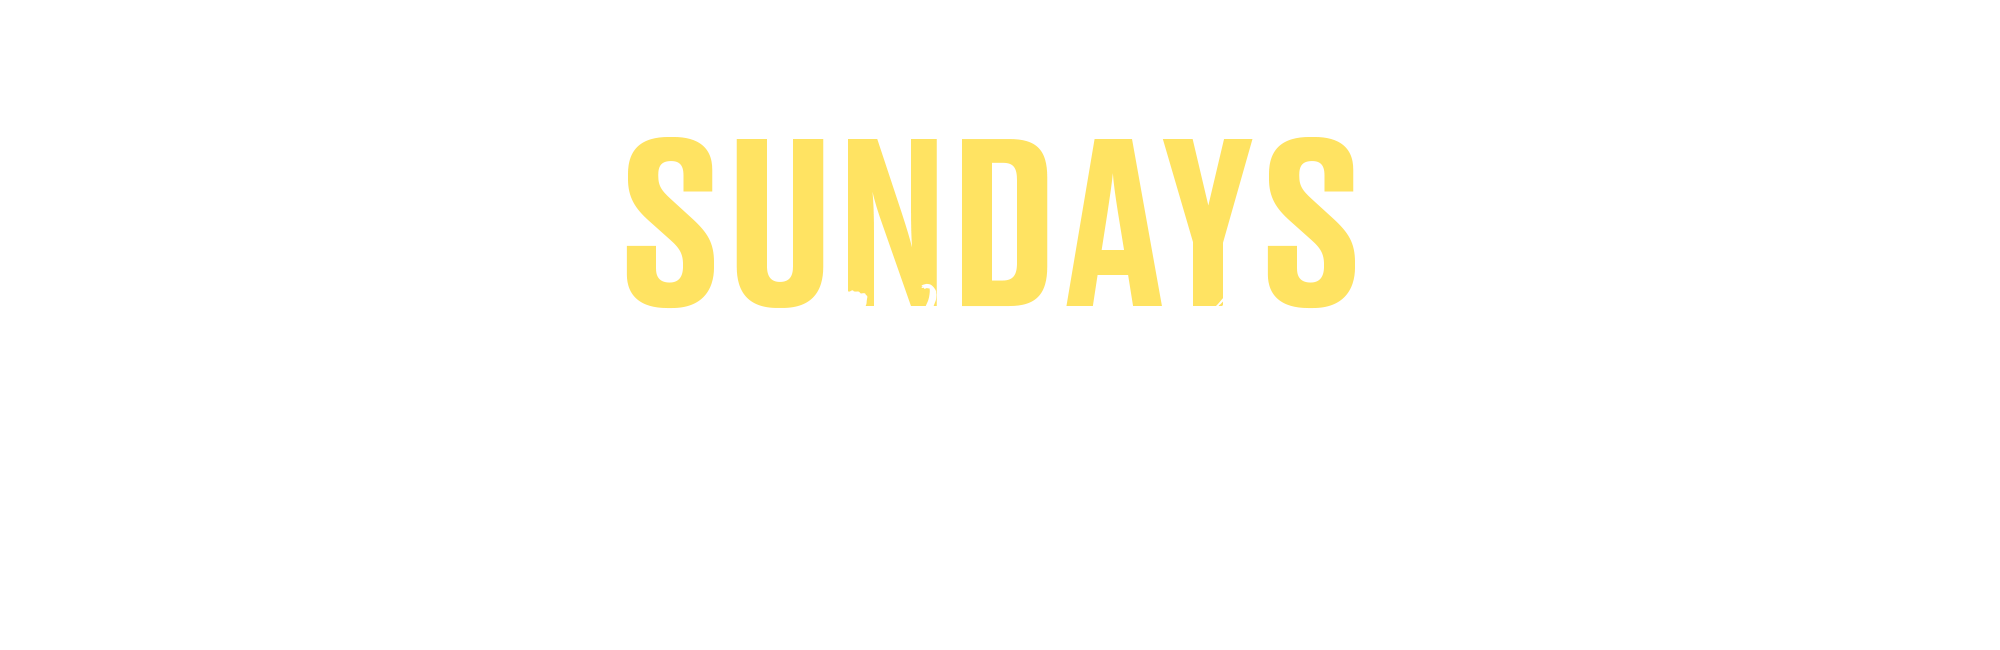 Sundays in November